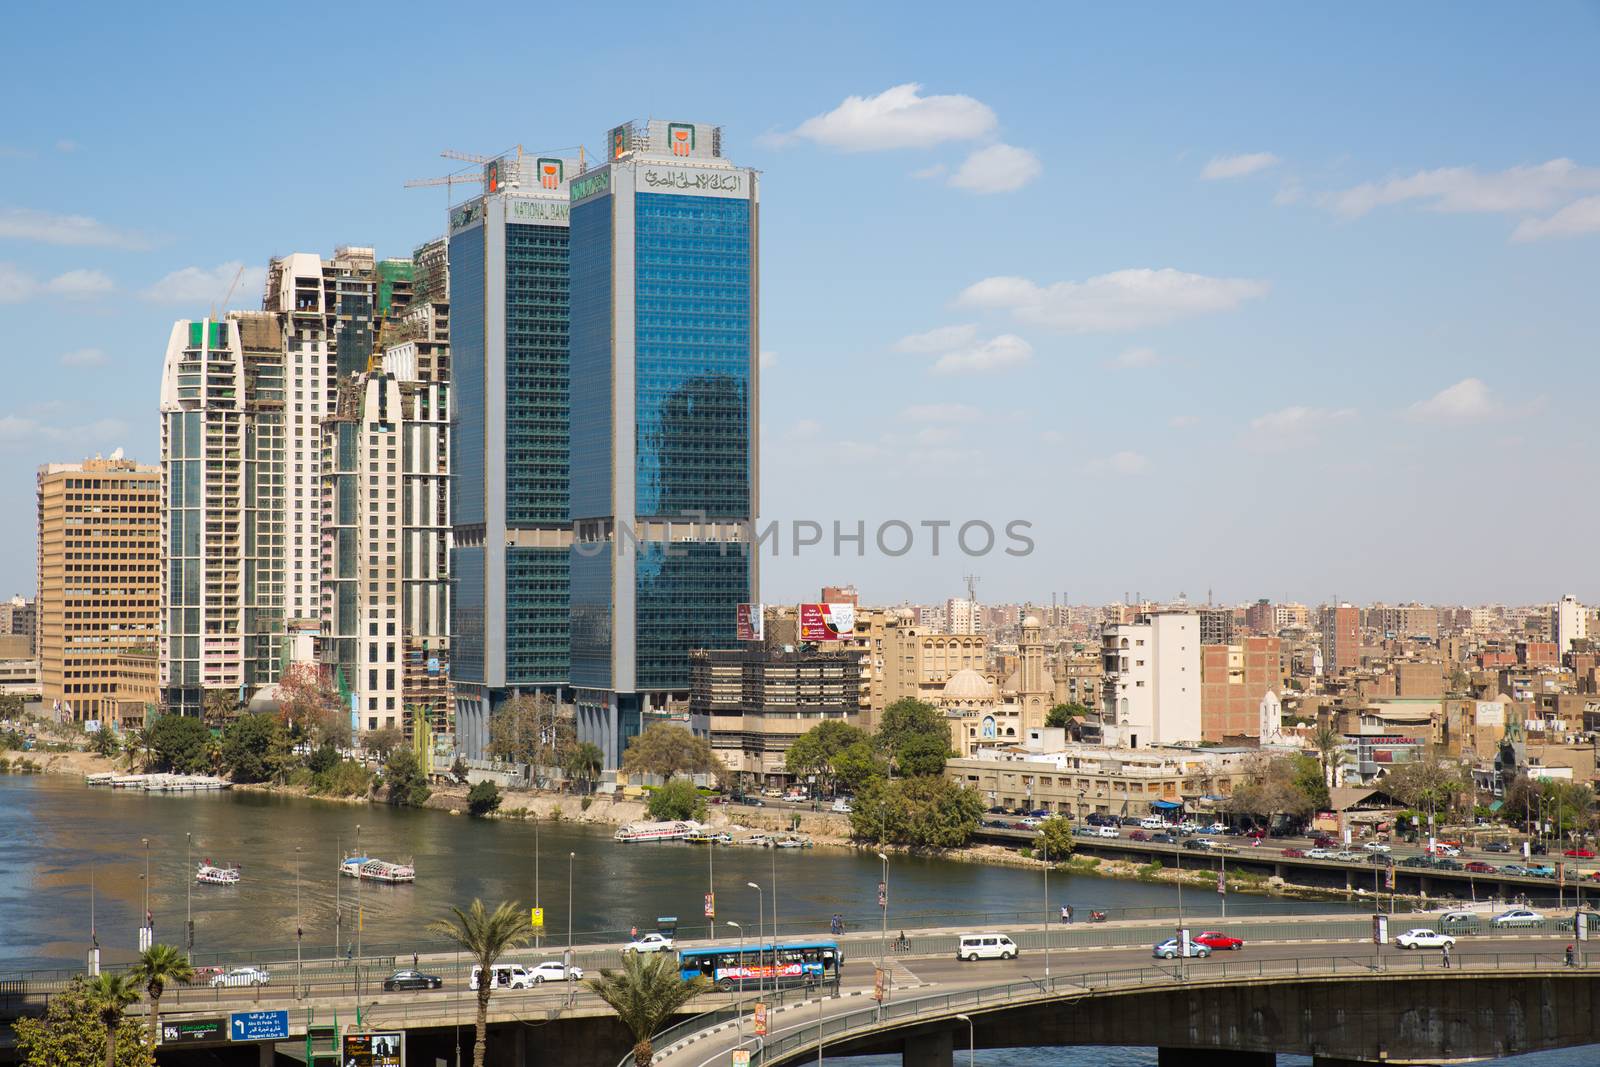 Cairo, Egypt - March 4, 2016: The 15th May bridge, the Nile river & the Corniche Street in central Cairo.